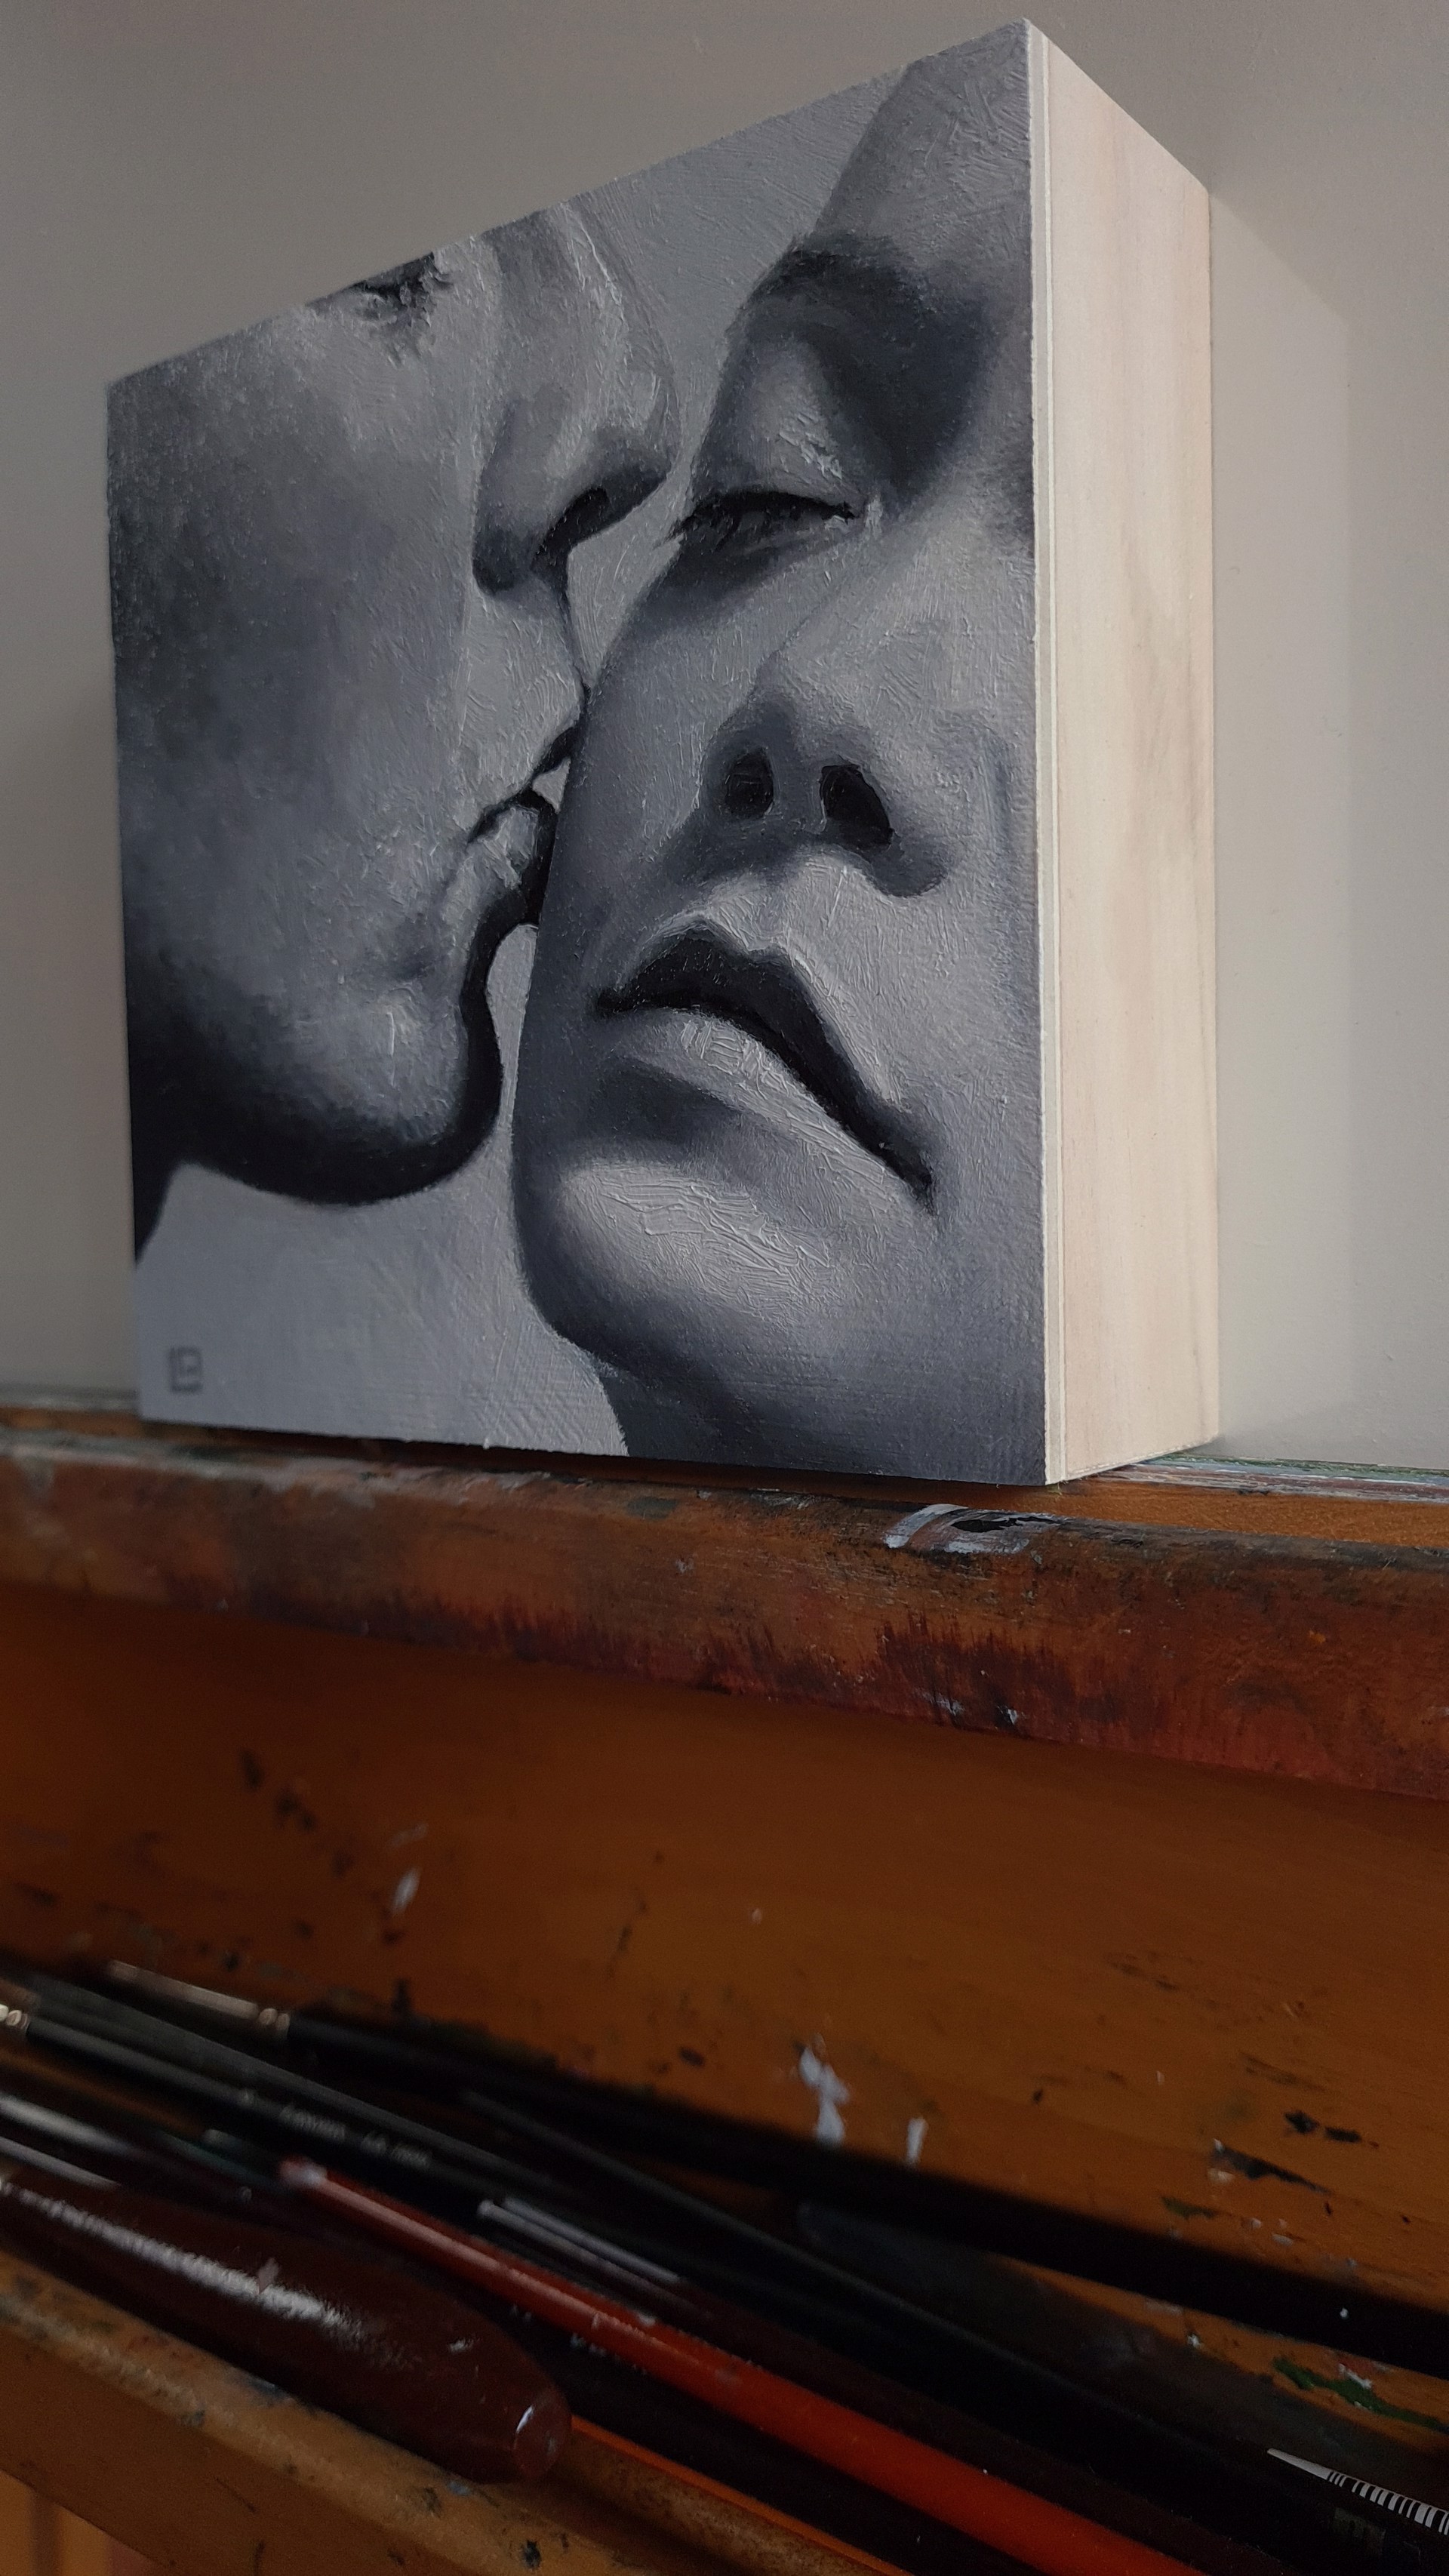 The Kiss #1 by Linda Adair